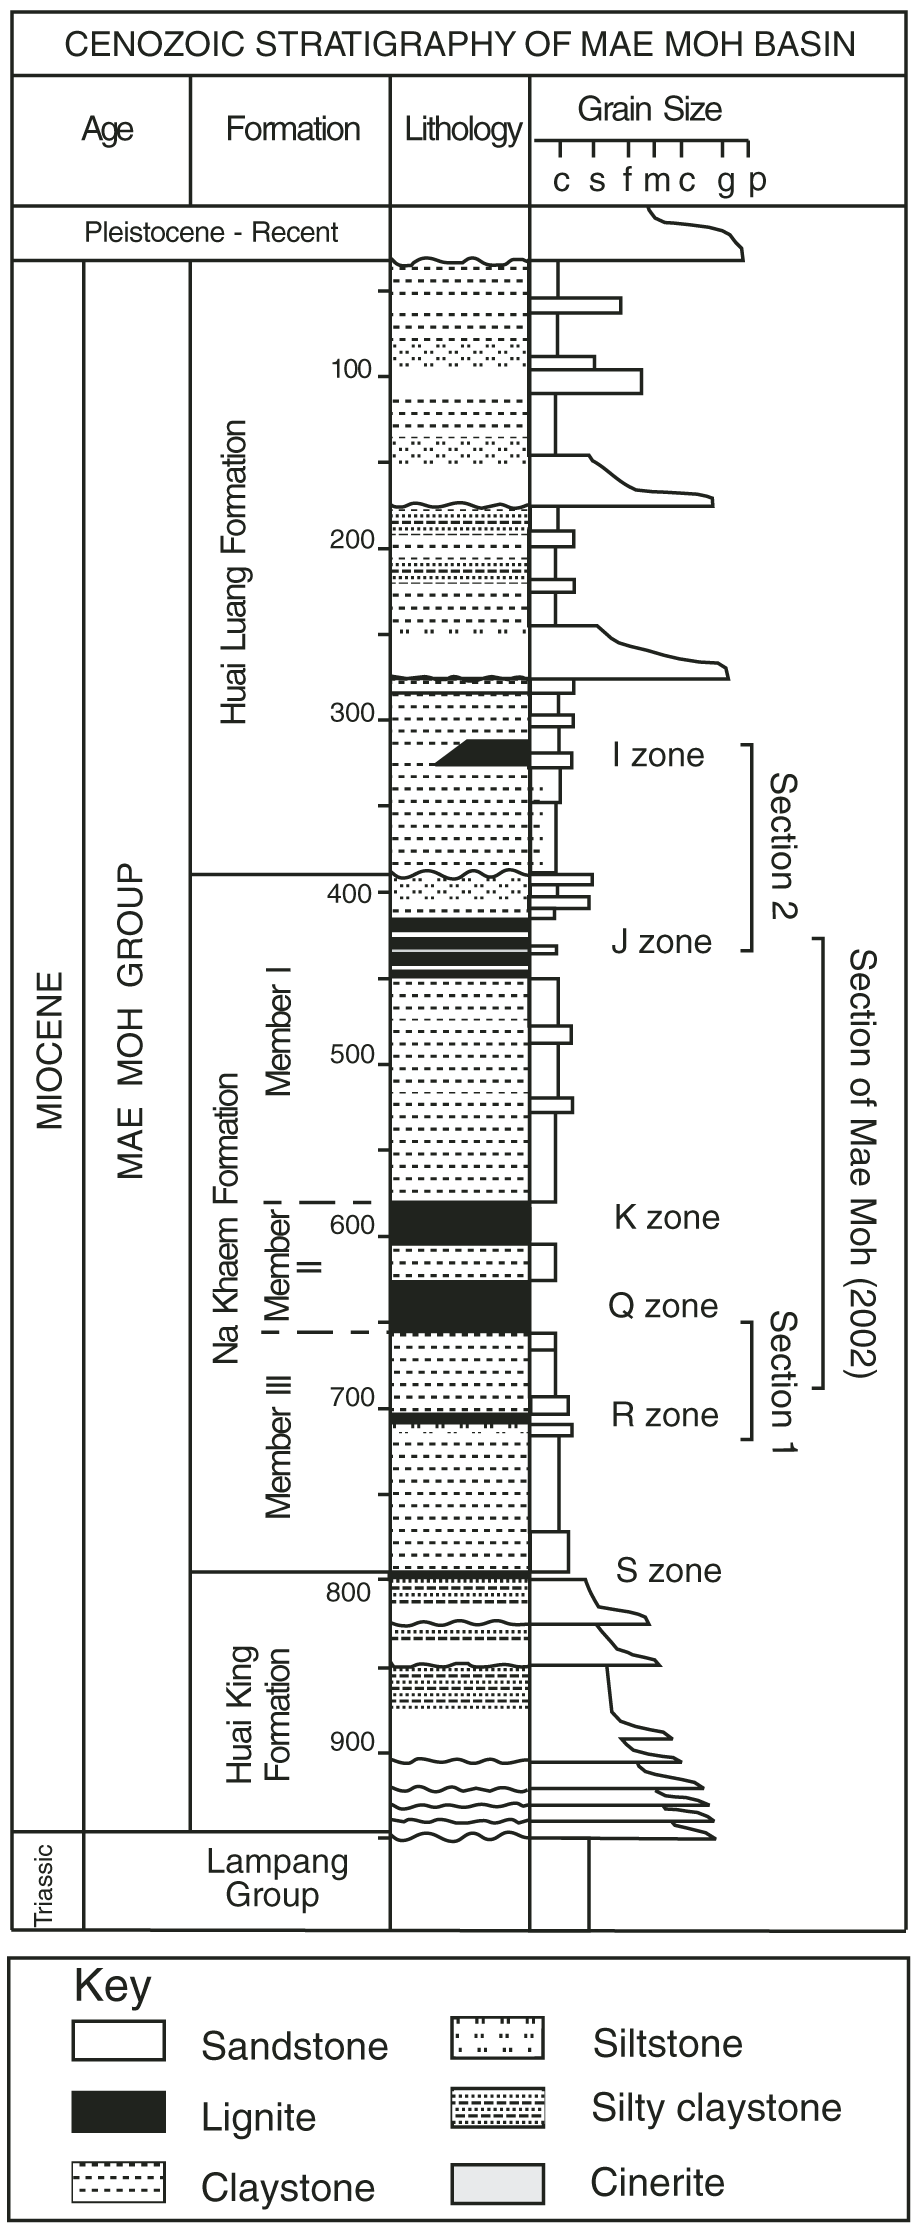 ลำดับชั้นหินของกลุ่มหินแม่เมาะ (Coster et al., 2009)